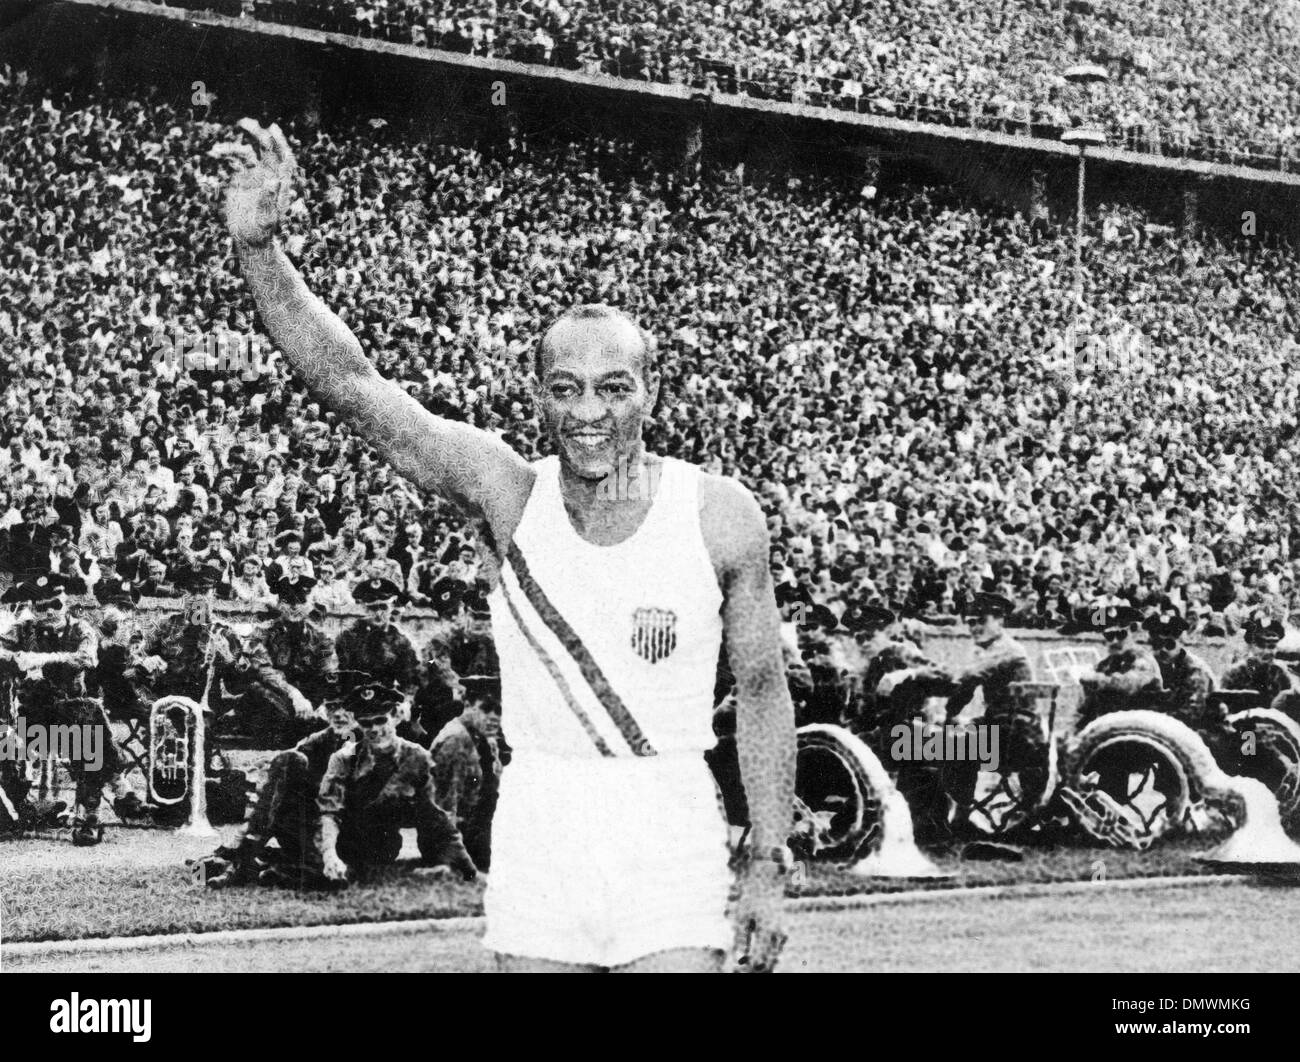 2 agosto 1936 - Berlino, Germania - American Olympian Jesse Owens, ha vinto quattro medaglie d oro per gli Stati Uniti in pista e sul campo eventi in occasione dei Giochi Olimpici. (Credito Immagine: © Keystone Pictures USA/ZUMAPRESS.com) Foto Stock